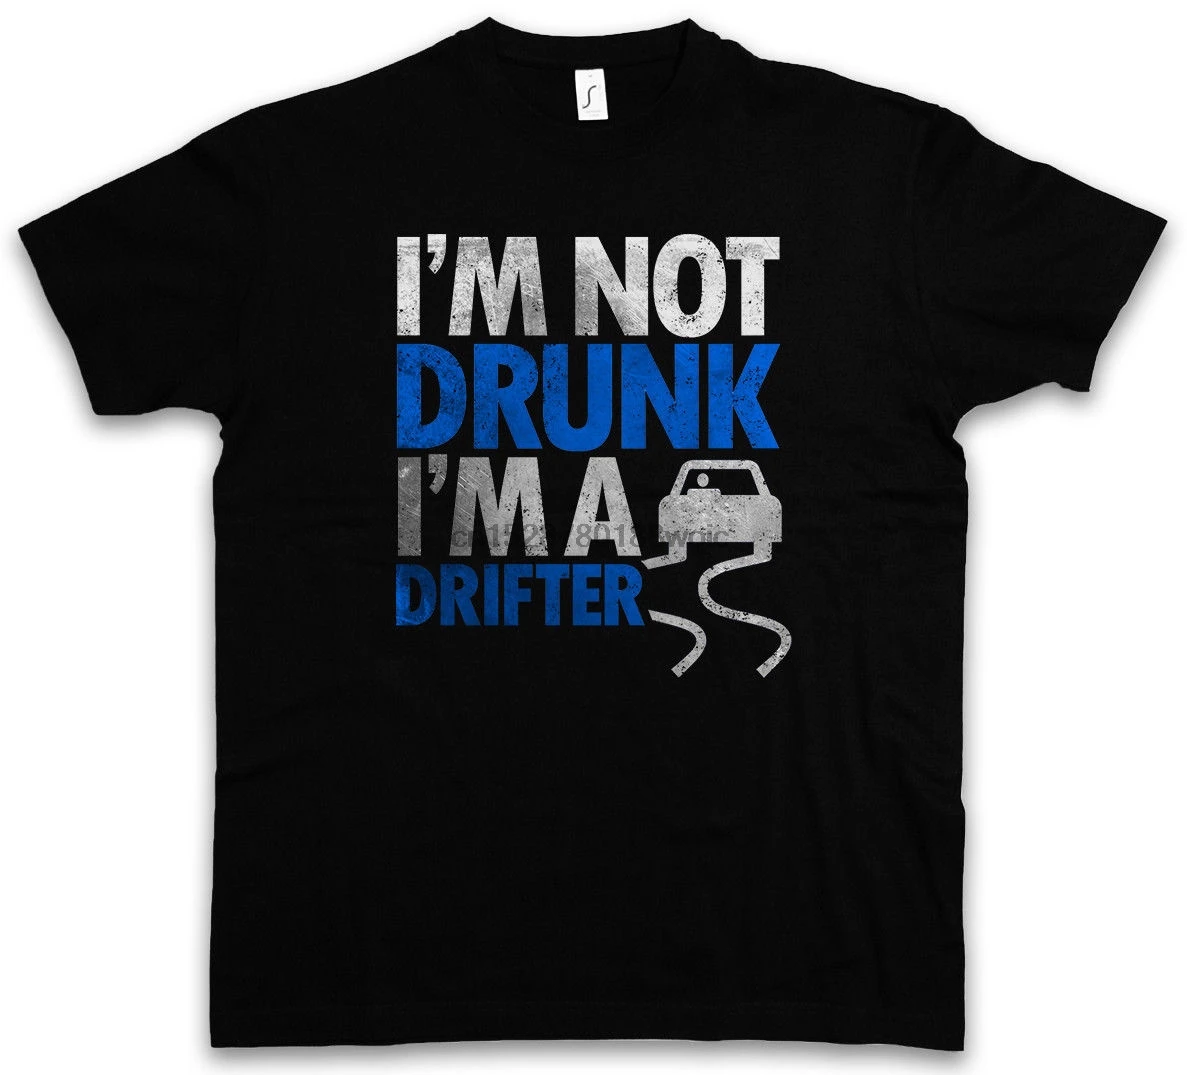 Im drunk. Im not drunk футболка. I M not drunk футболка. Trust me i am Drifter футболка. Im not drunk футболка твое.